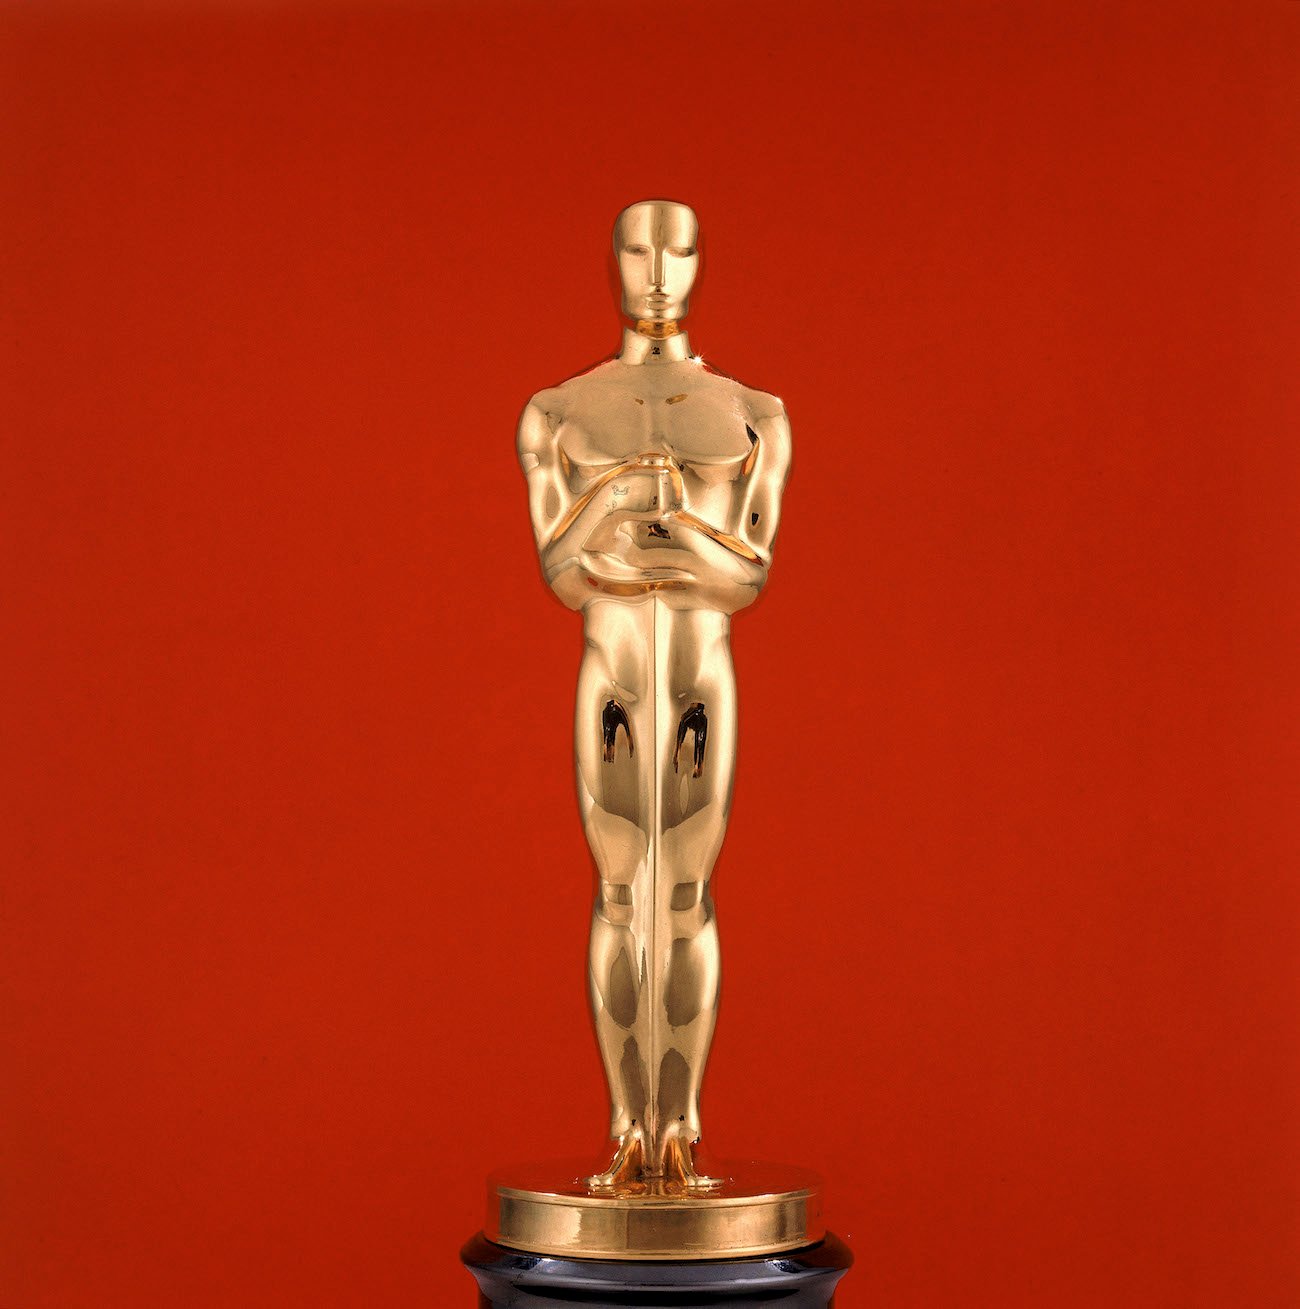 Oscars Academy Award statuette